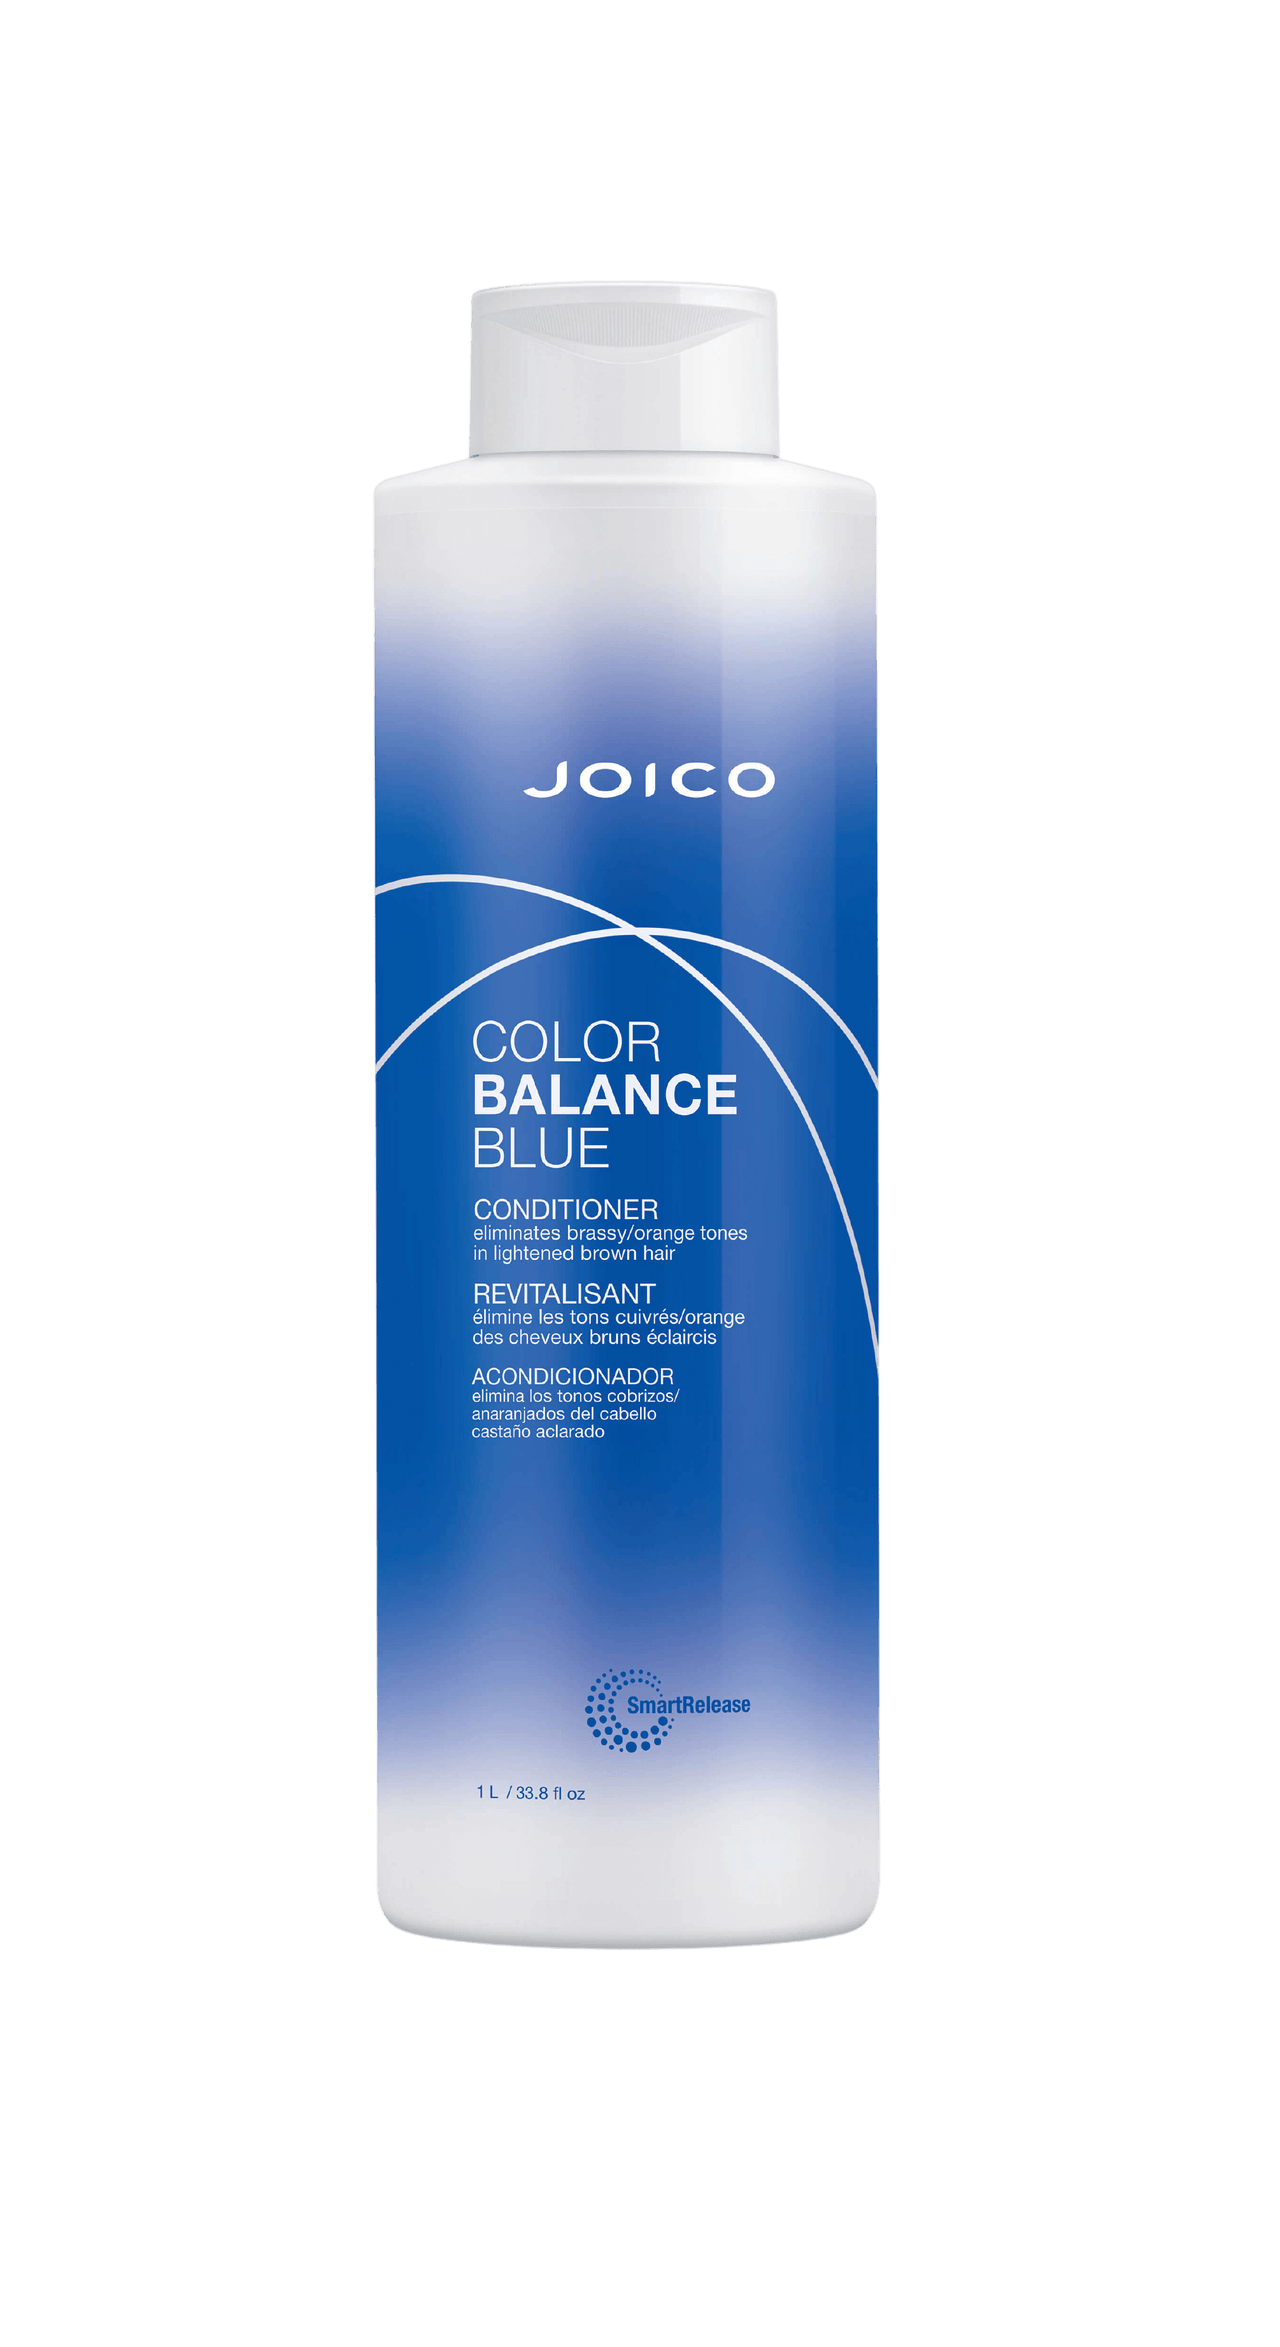 Joico Color Balance Blue Conditioner 33.8oz / 1 Litre.